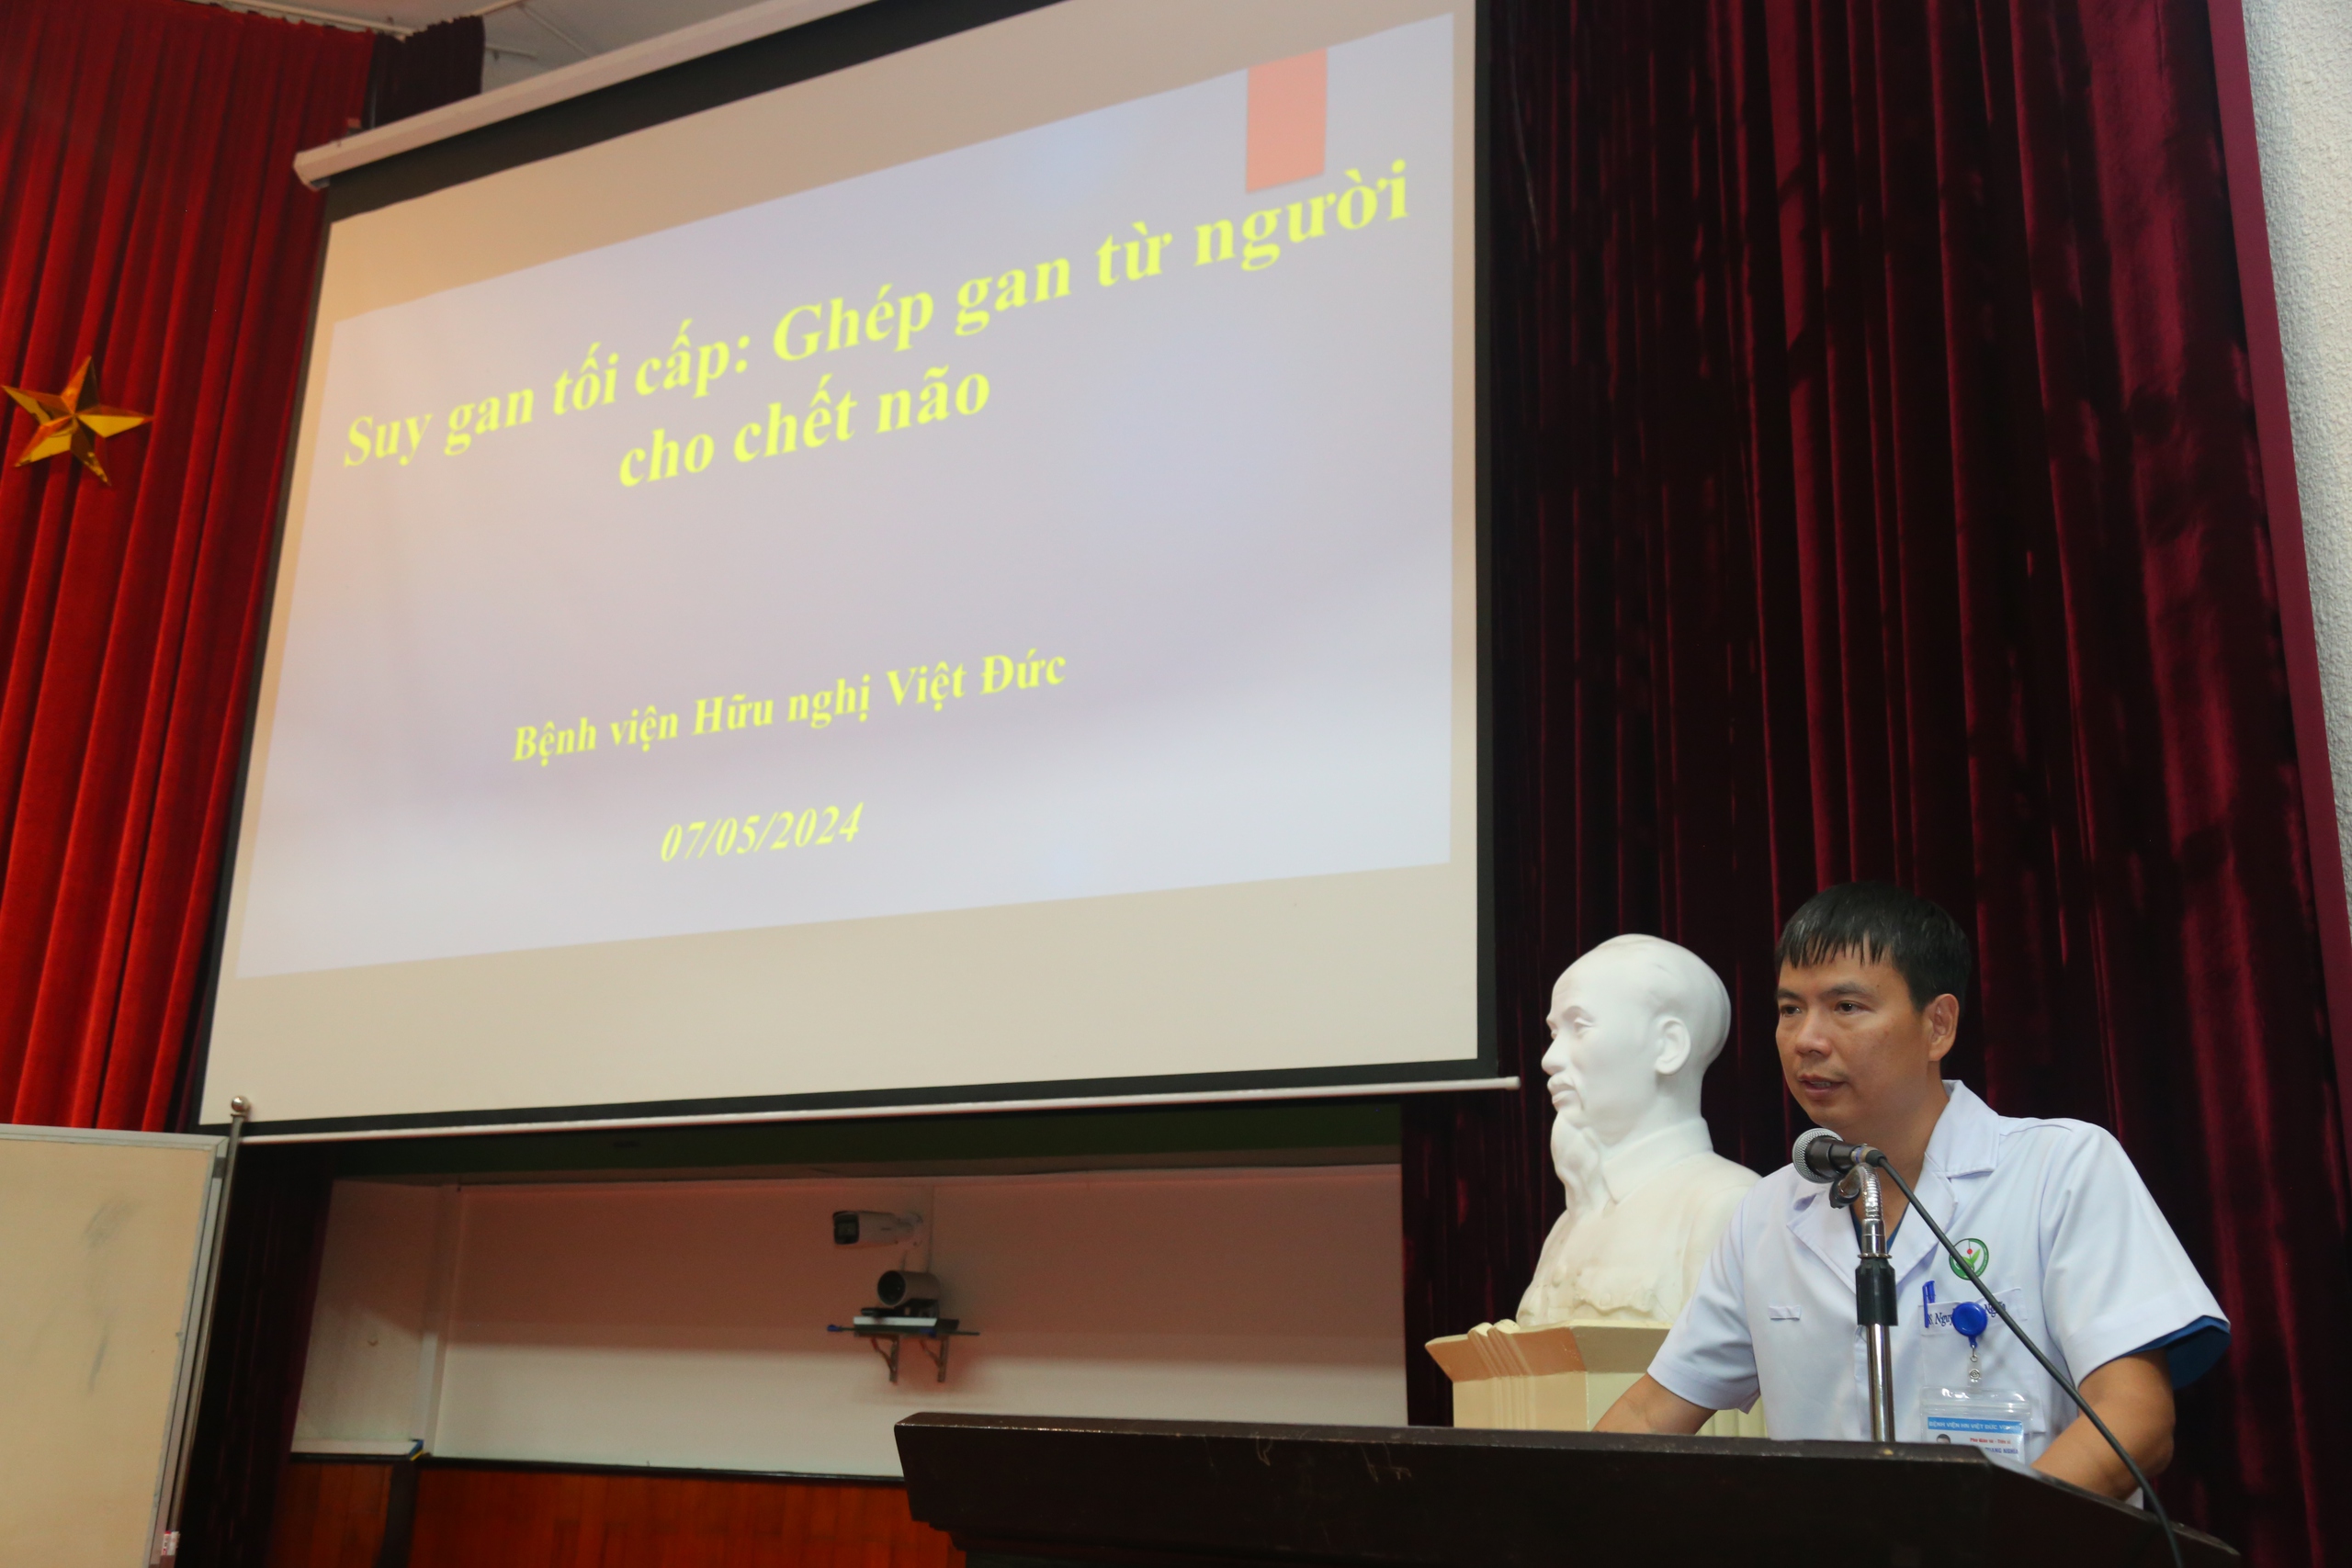 Lần đầu tiên tại Việt Nam ghép gan thành công cho bệnh nhân suy gan tối cấp, sự sống tính theo giờ- Ảnh 2.